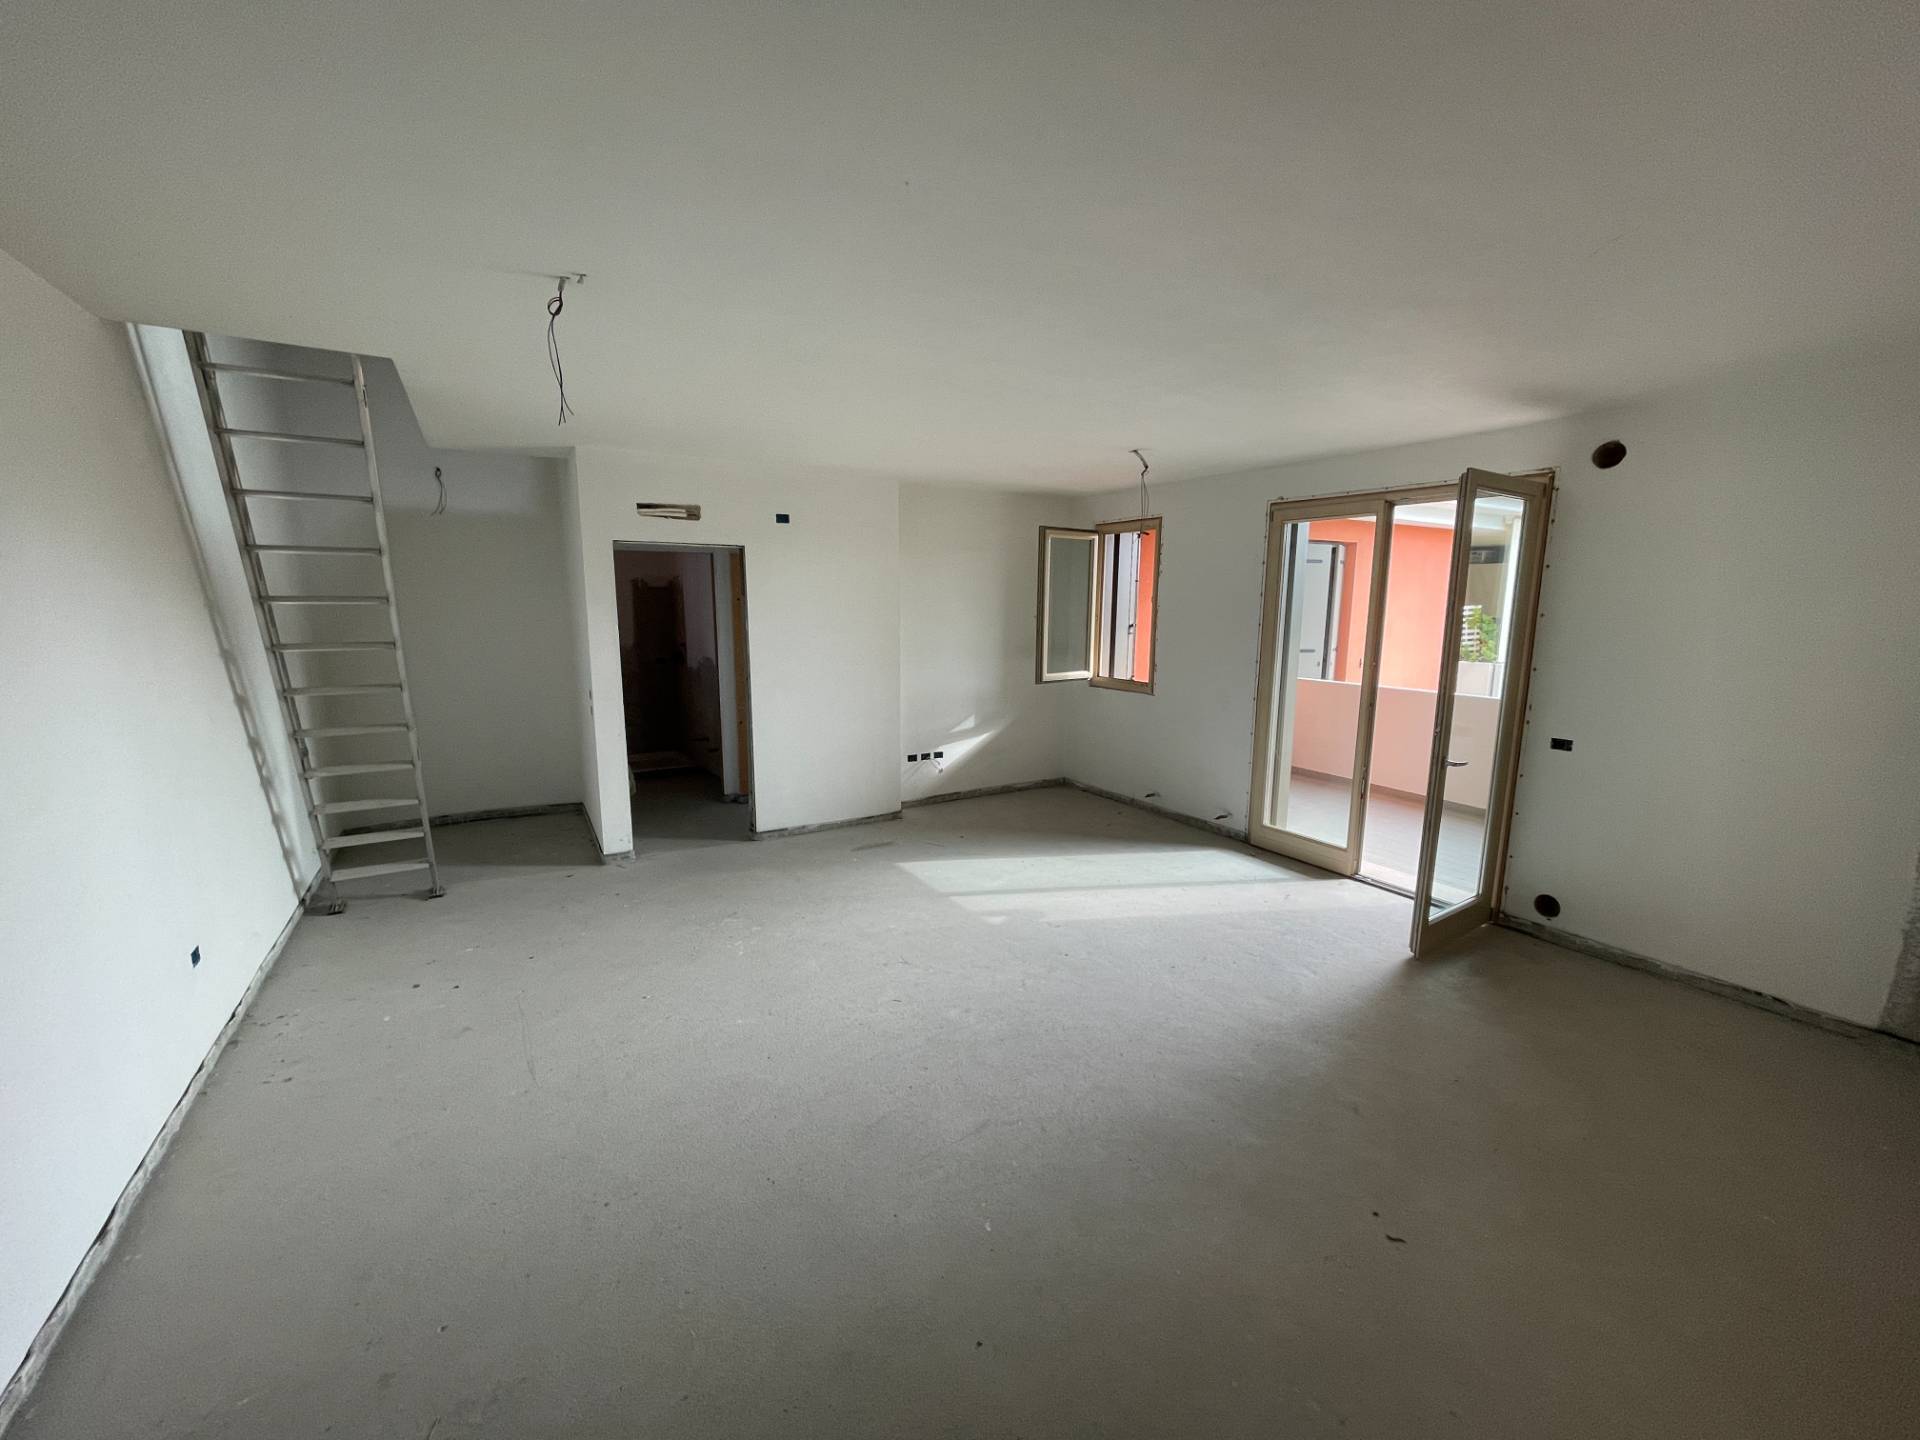 Appartamento in vendita a Quinto di Treviso